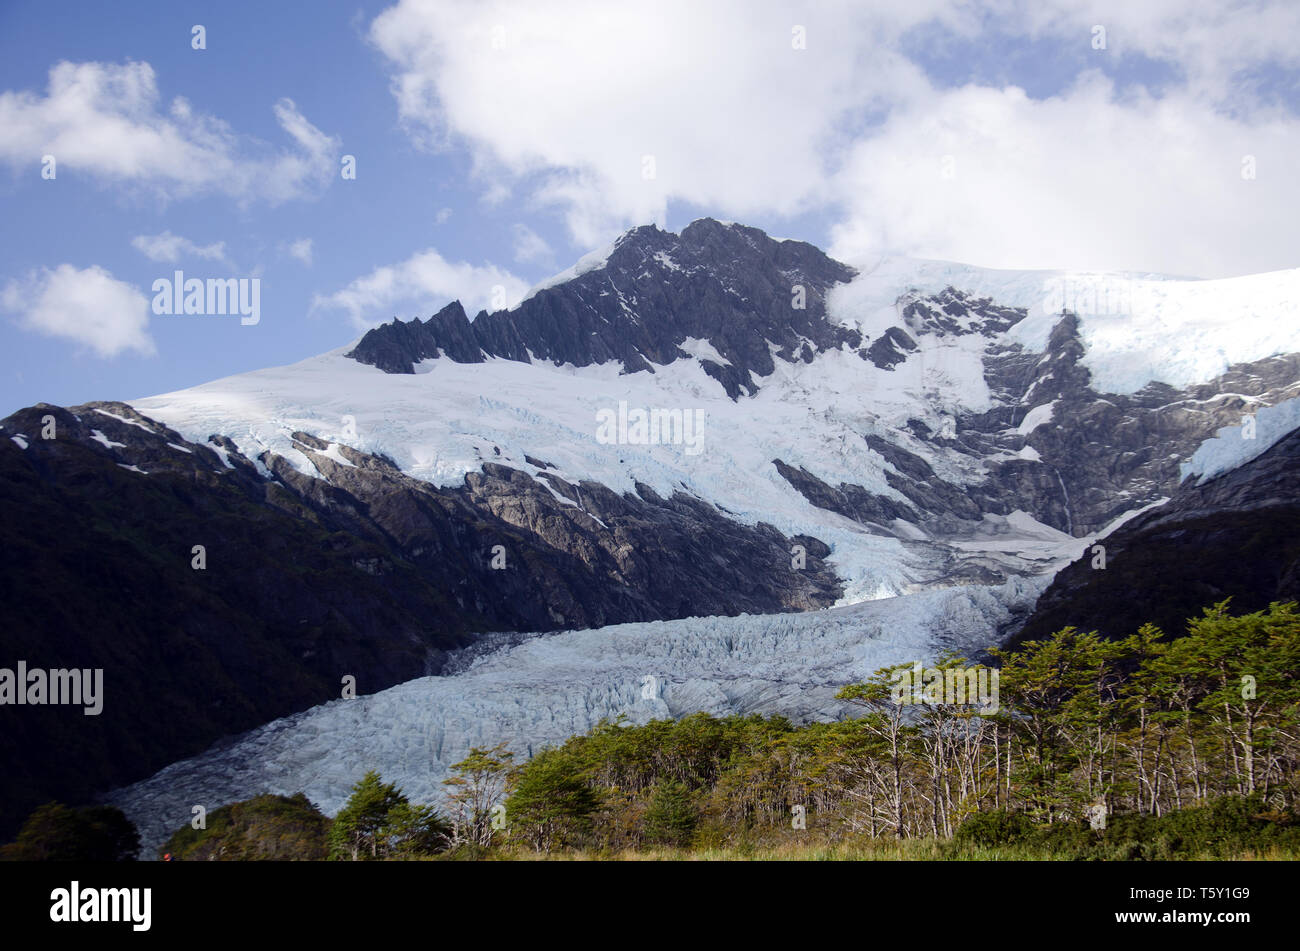 Un bosque de árboles prospera donde el glaciar Serrano puishes en un fiordo de Chile Foto de stock